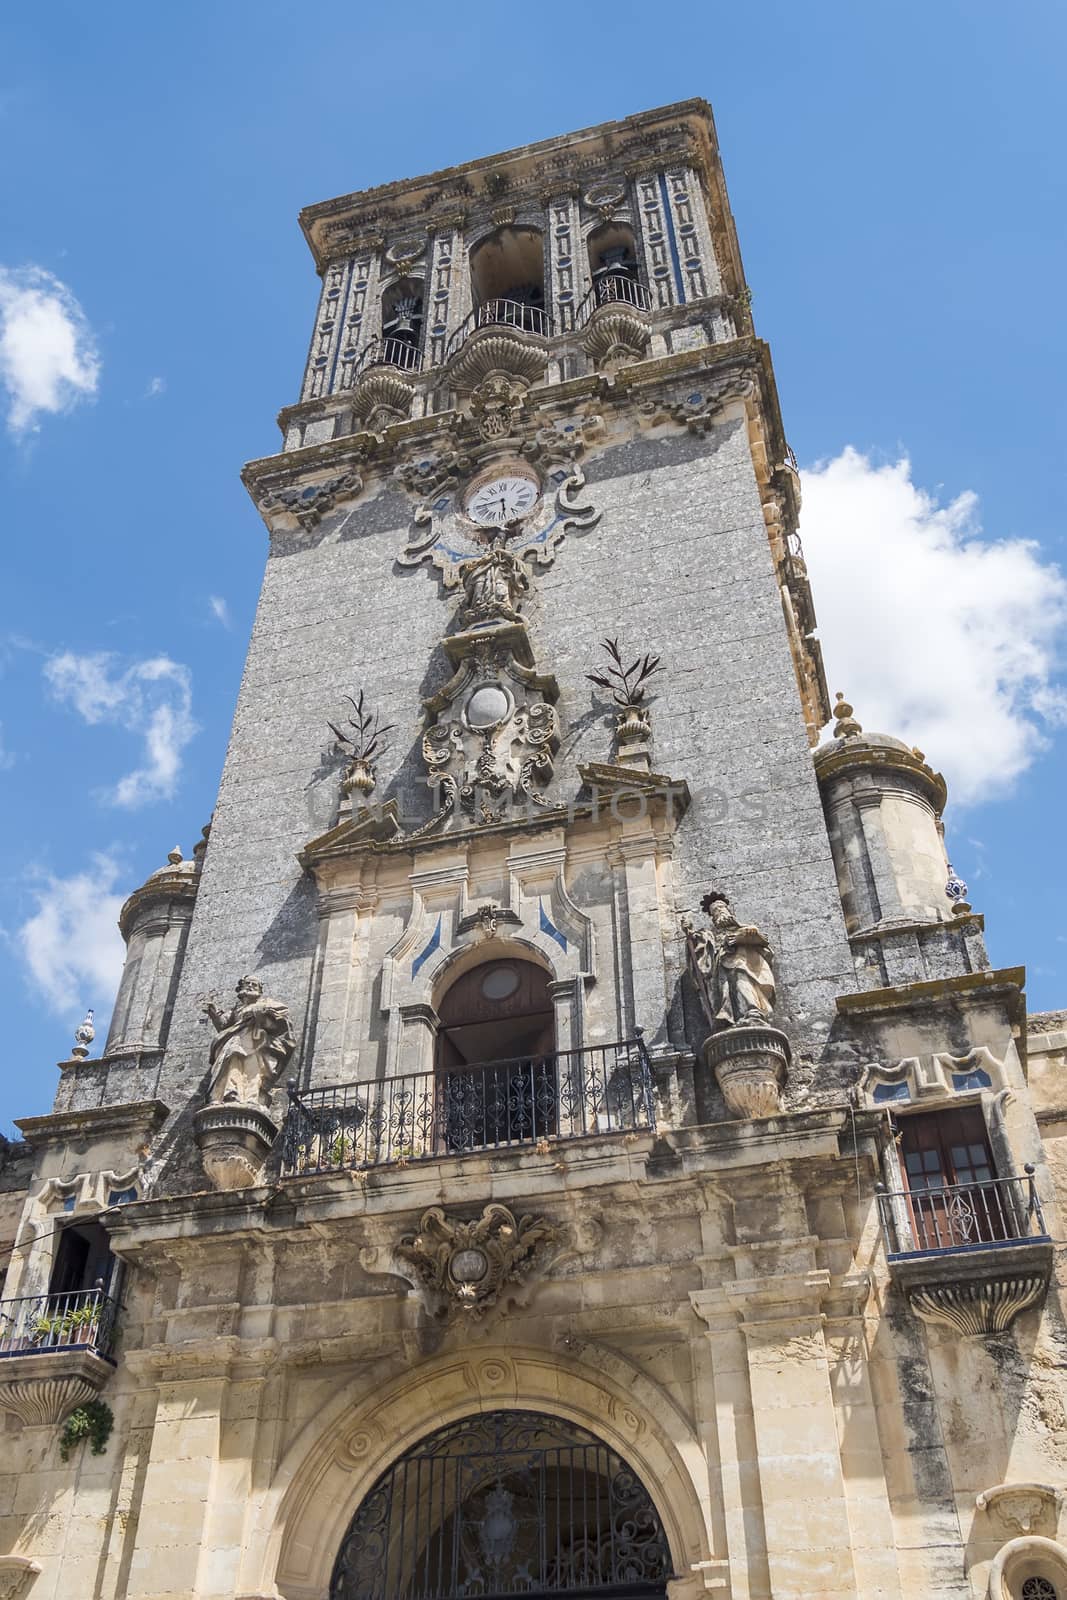 Church of Santa Maria de la Asuncion, Arcos de la Frontera, Spai by max8xam